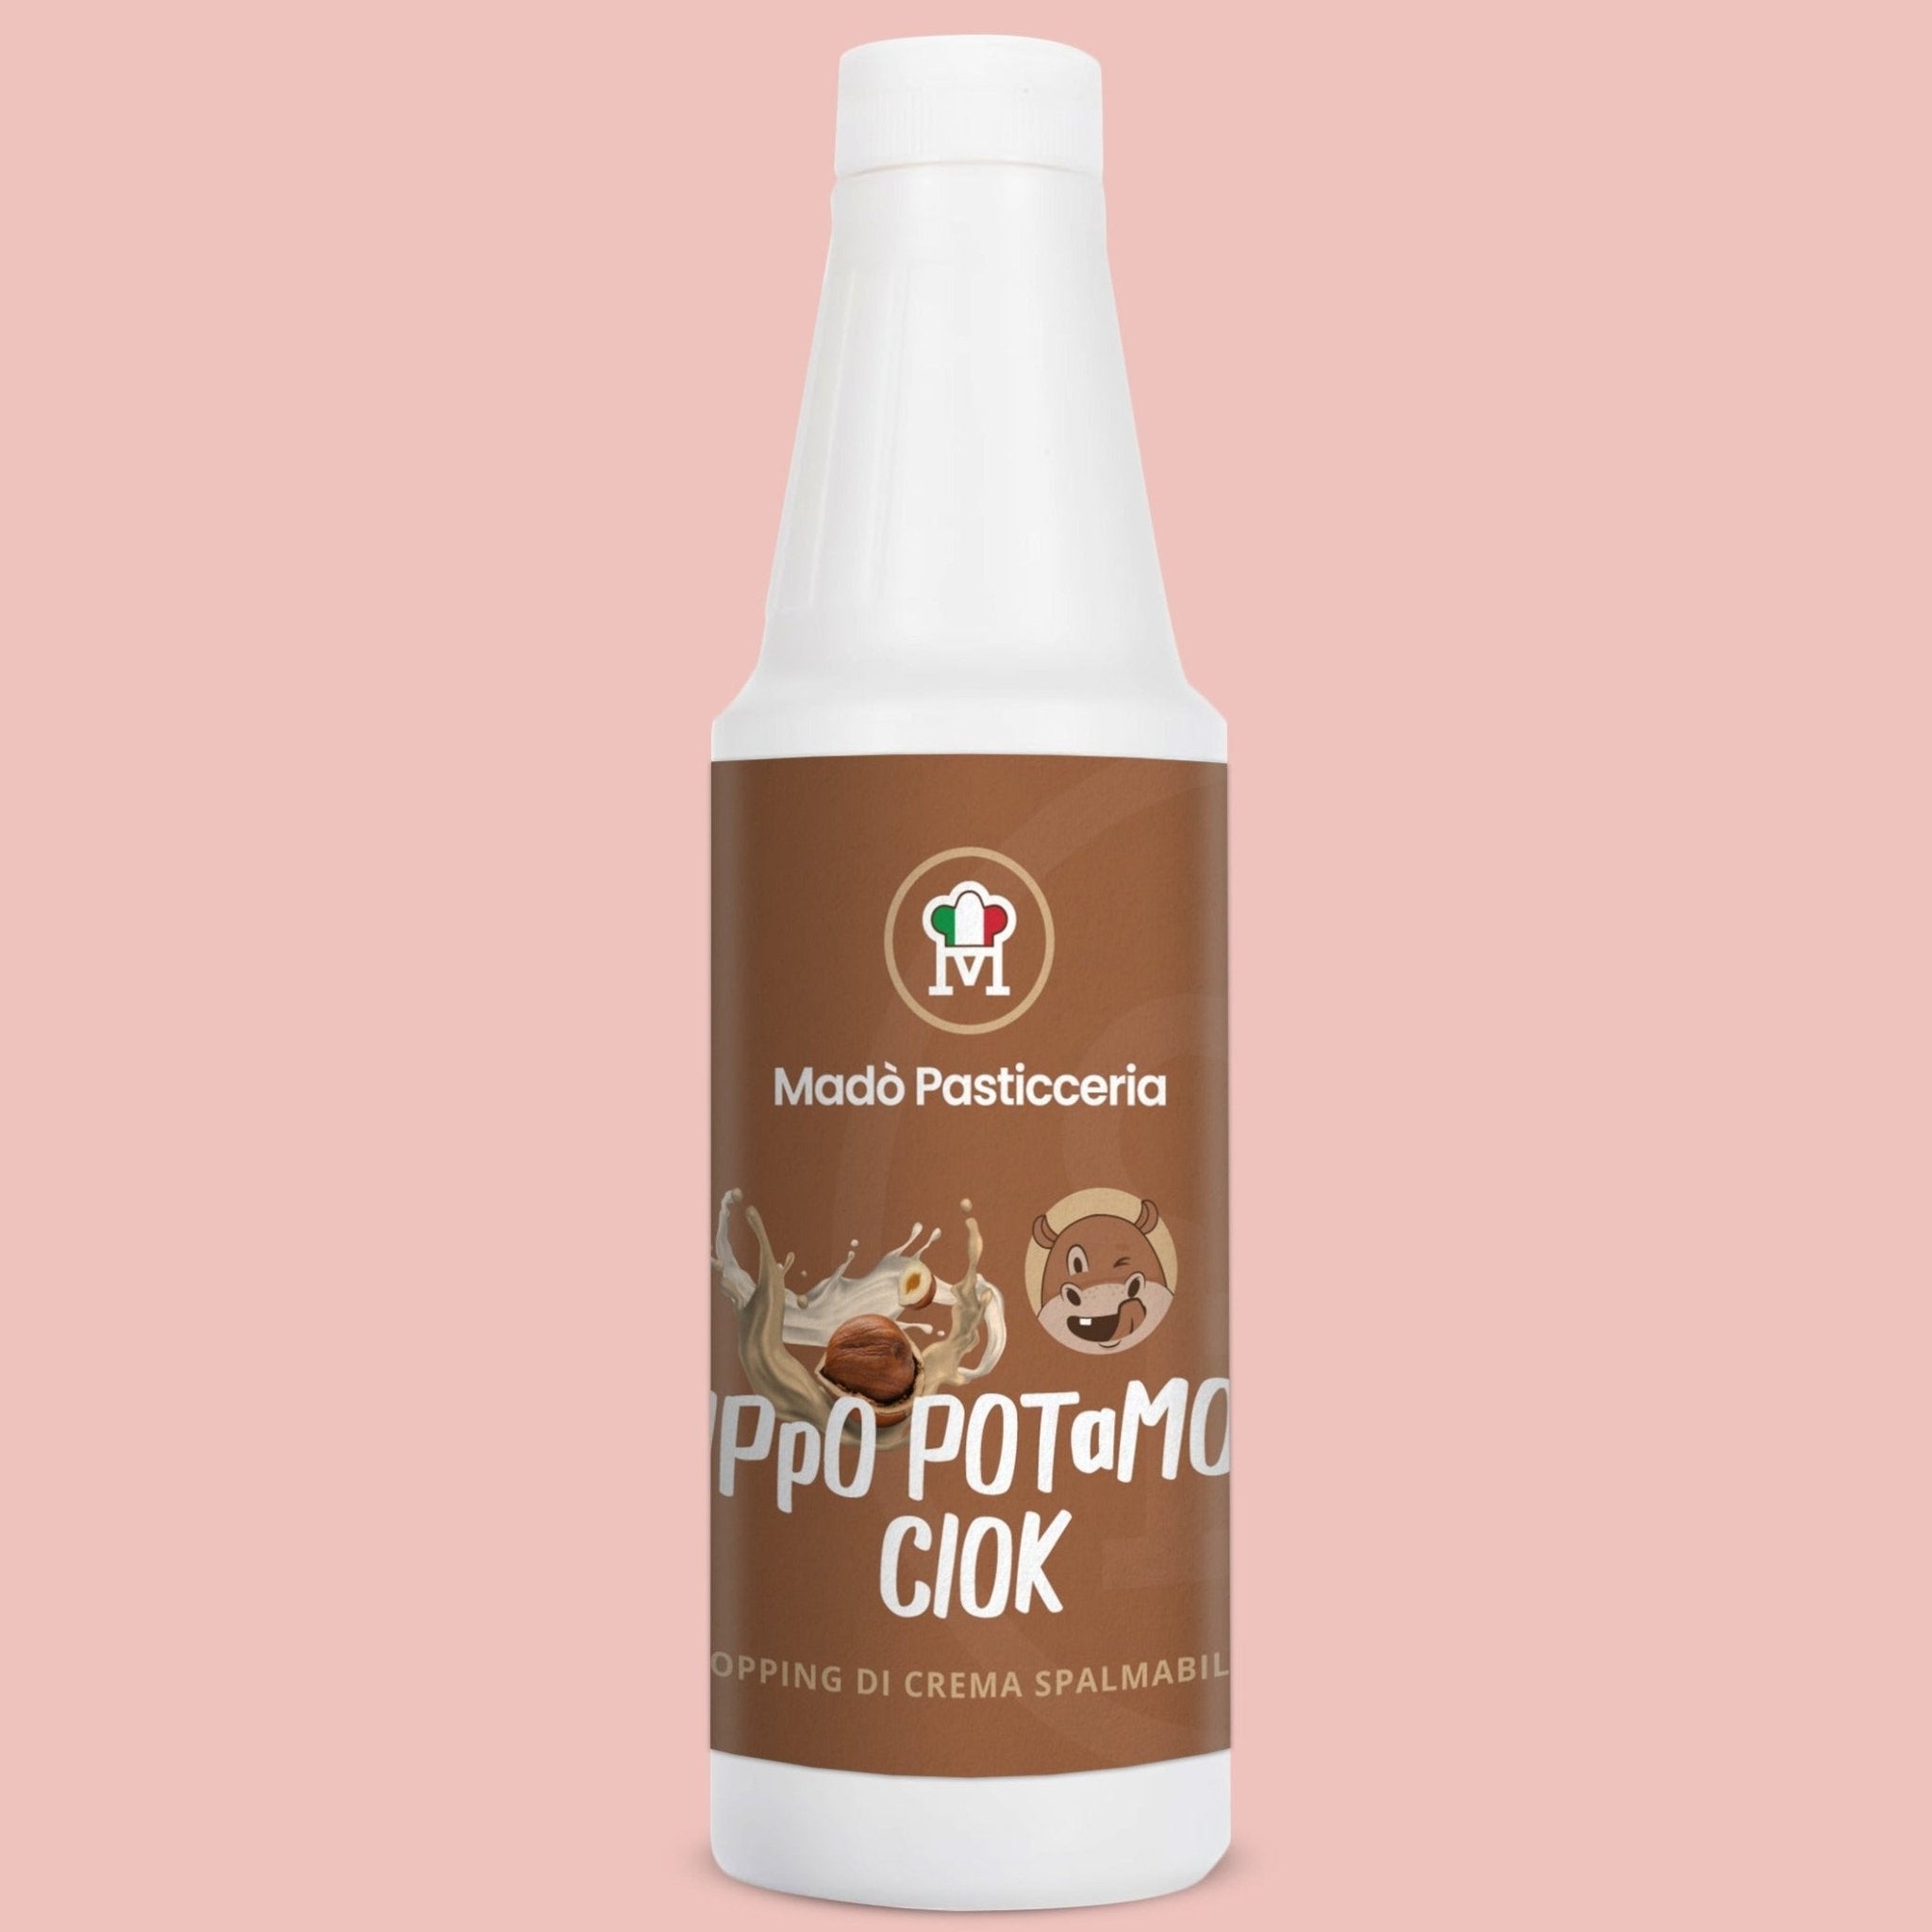 Topping di crema spalmabile "Ippo Potamo Ciok" - Madò Pasticceria